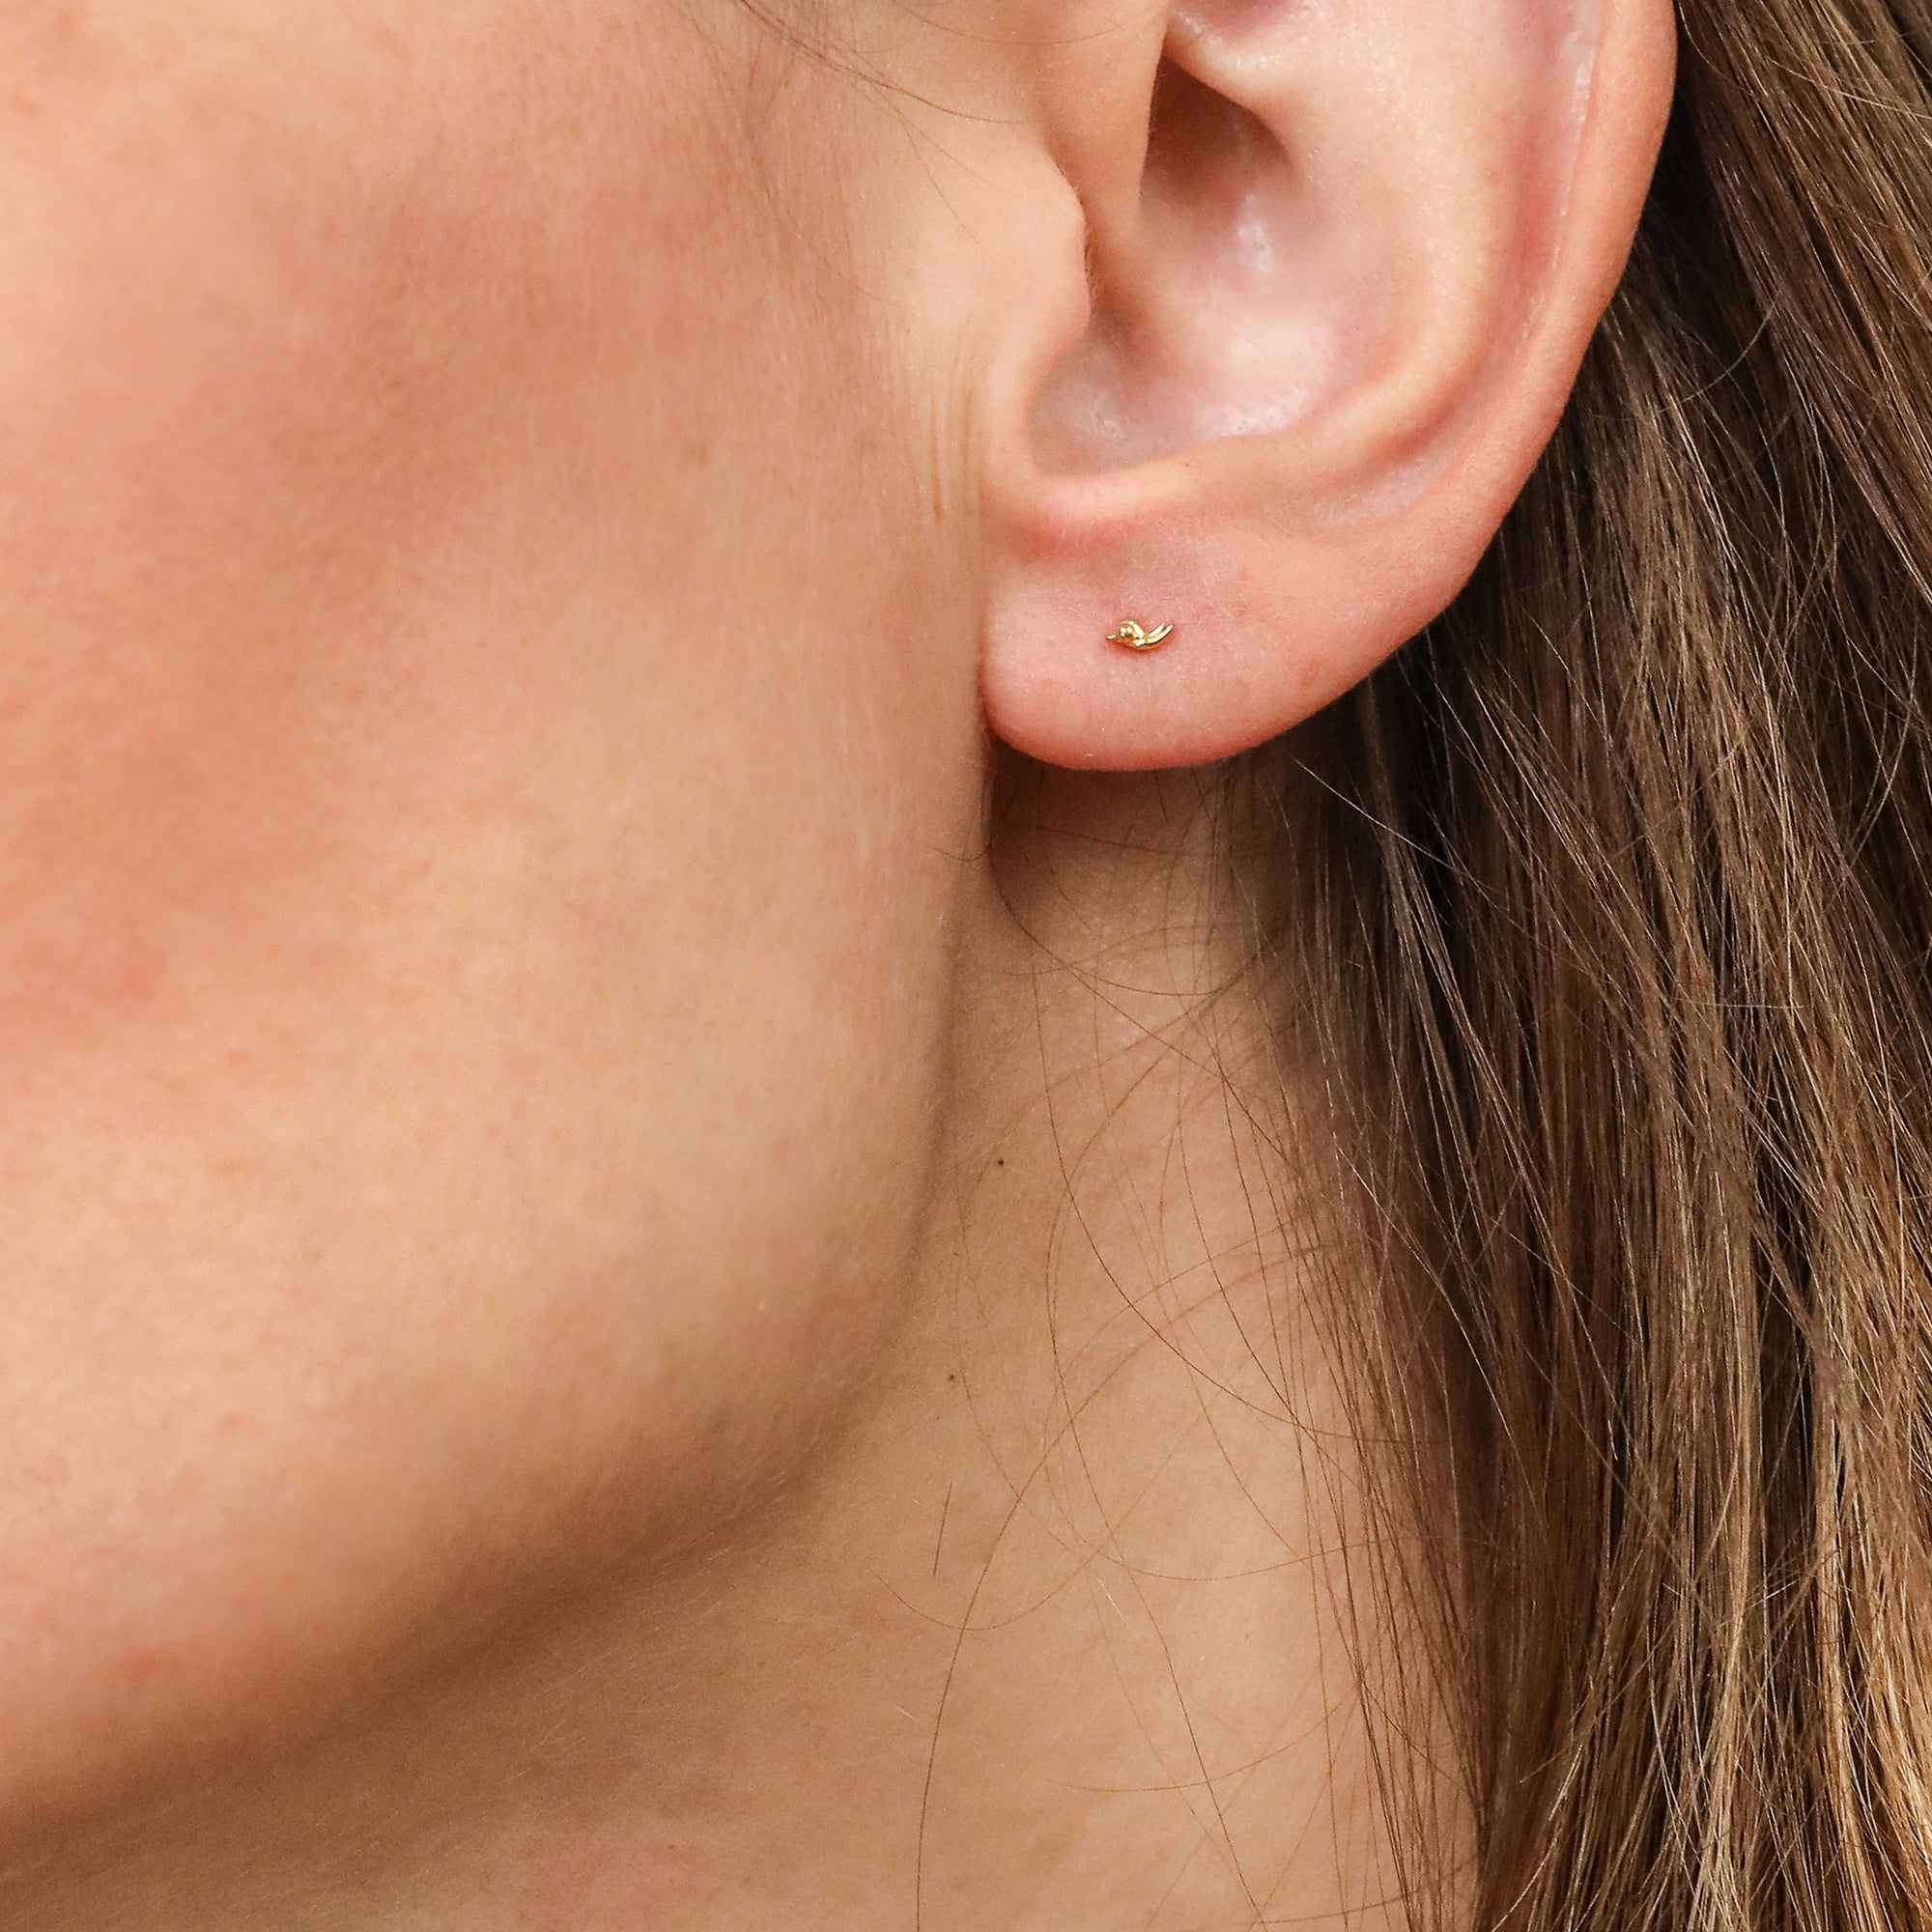 Stem Stud Earrings - Delicate Gold Stud Earrings - Lausanne Jewelry 